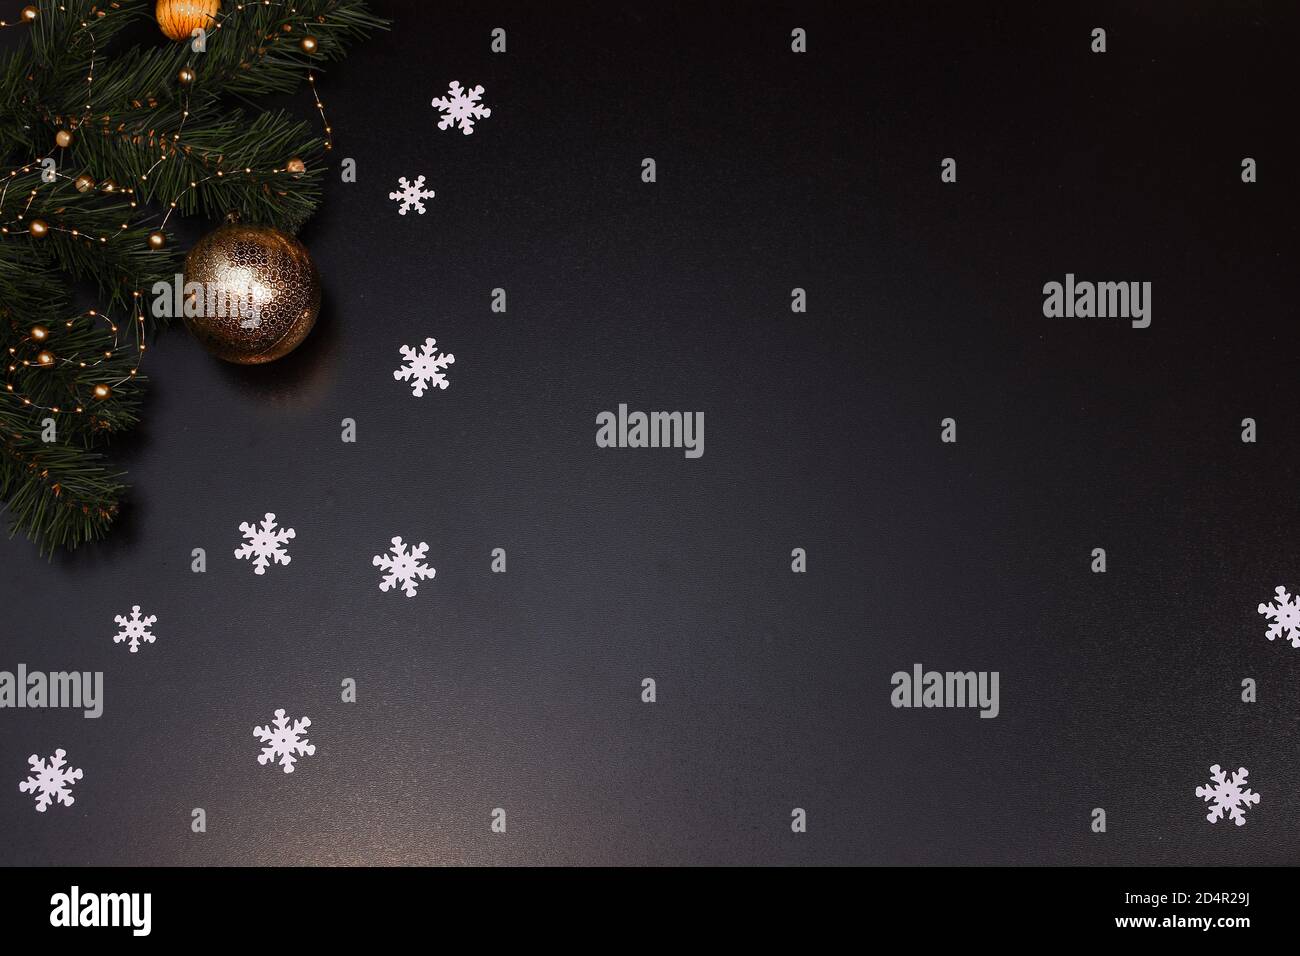 Weihnachtskomposition. Weiße Schneeflocken, Fichtenzweige, Weihnachtsspielzeug auf schwarzem Hintergrund. Platz für eine Inschrift. Stockfoto